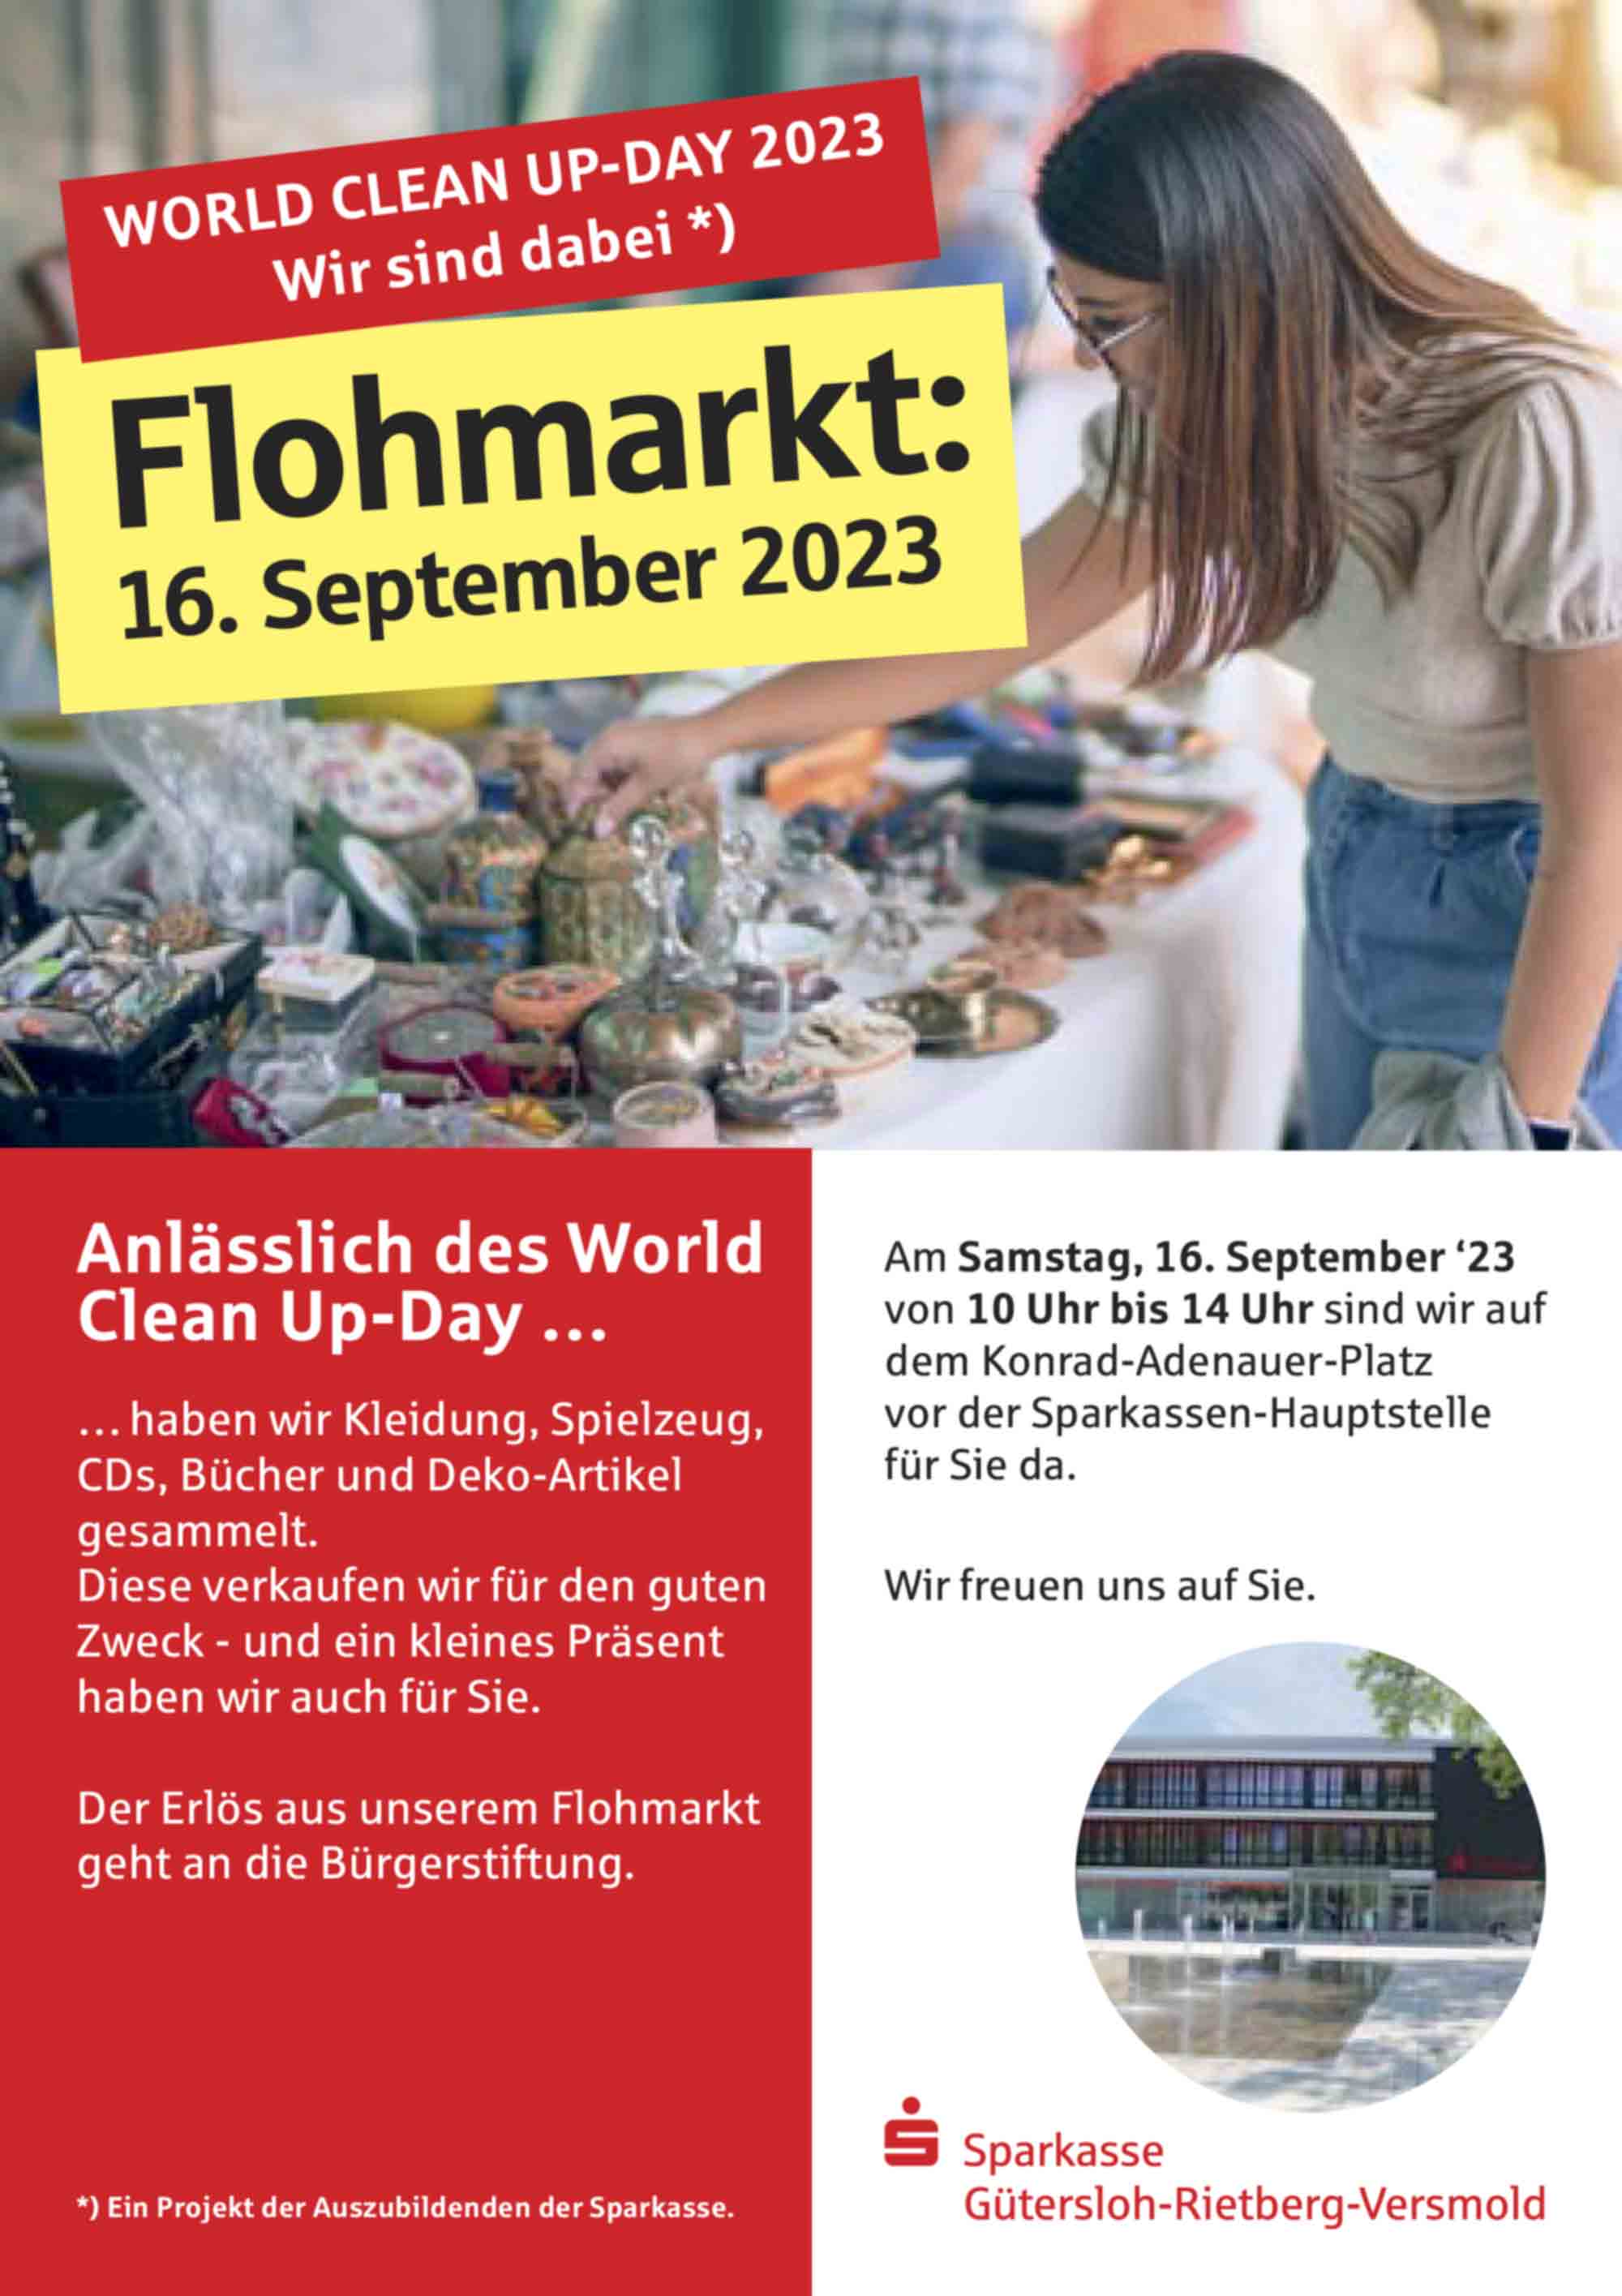 Sparkasse Gütersloh, Rietberg, Versmold: World Clean Up Day 2023 am 16. September 2023: »Wir sind dabei«